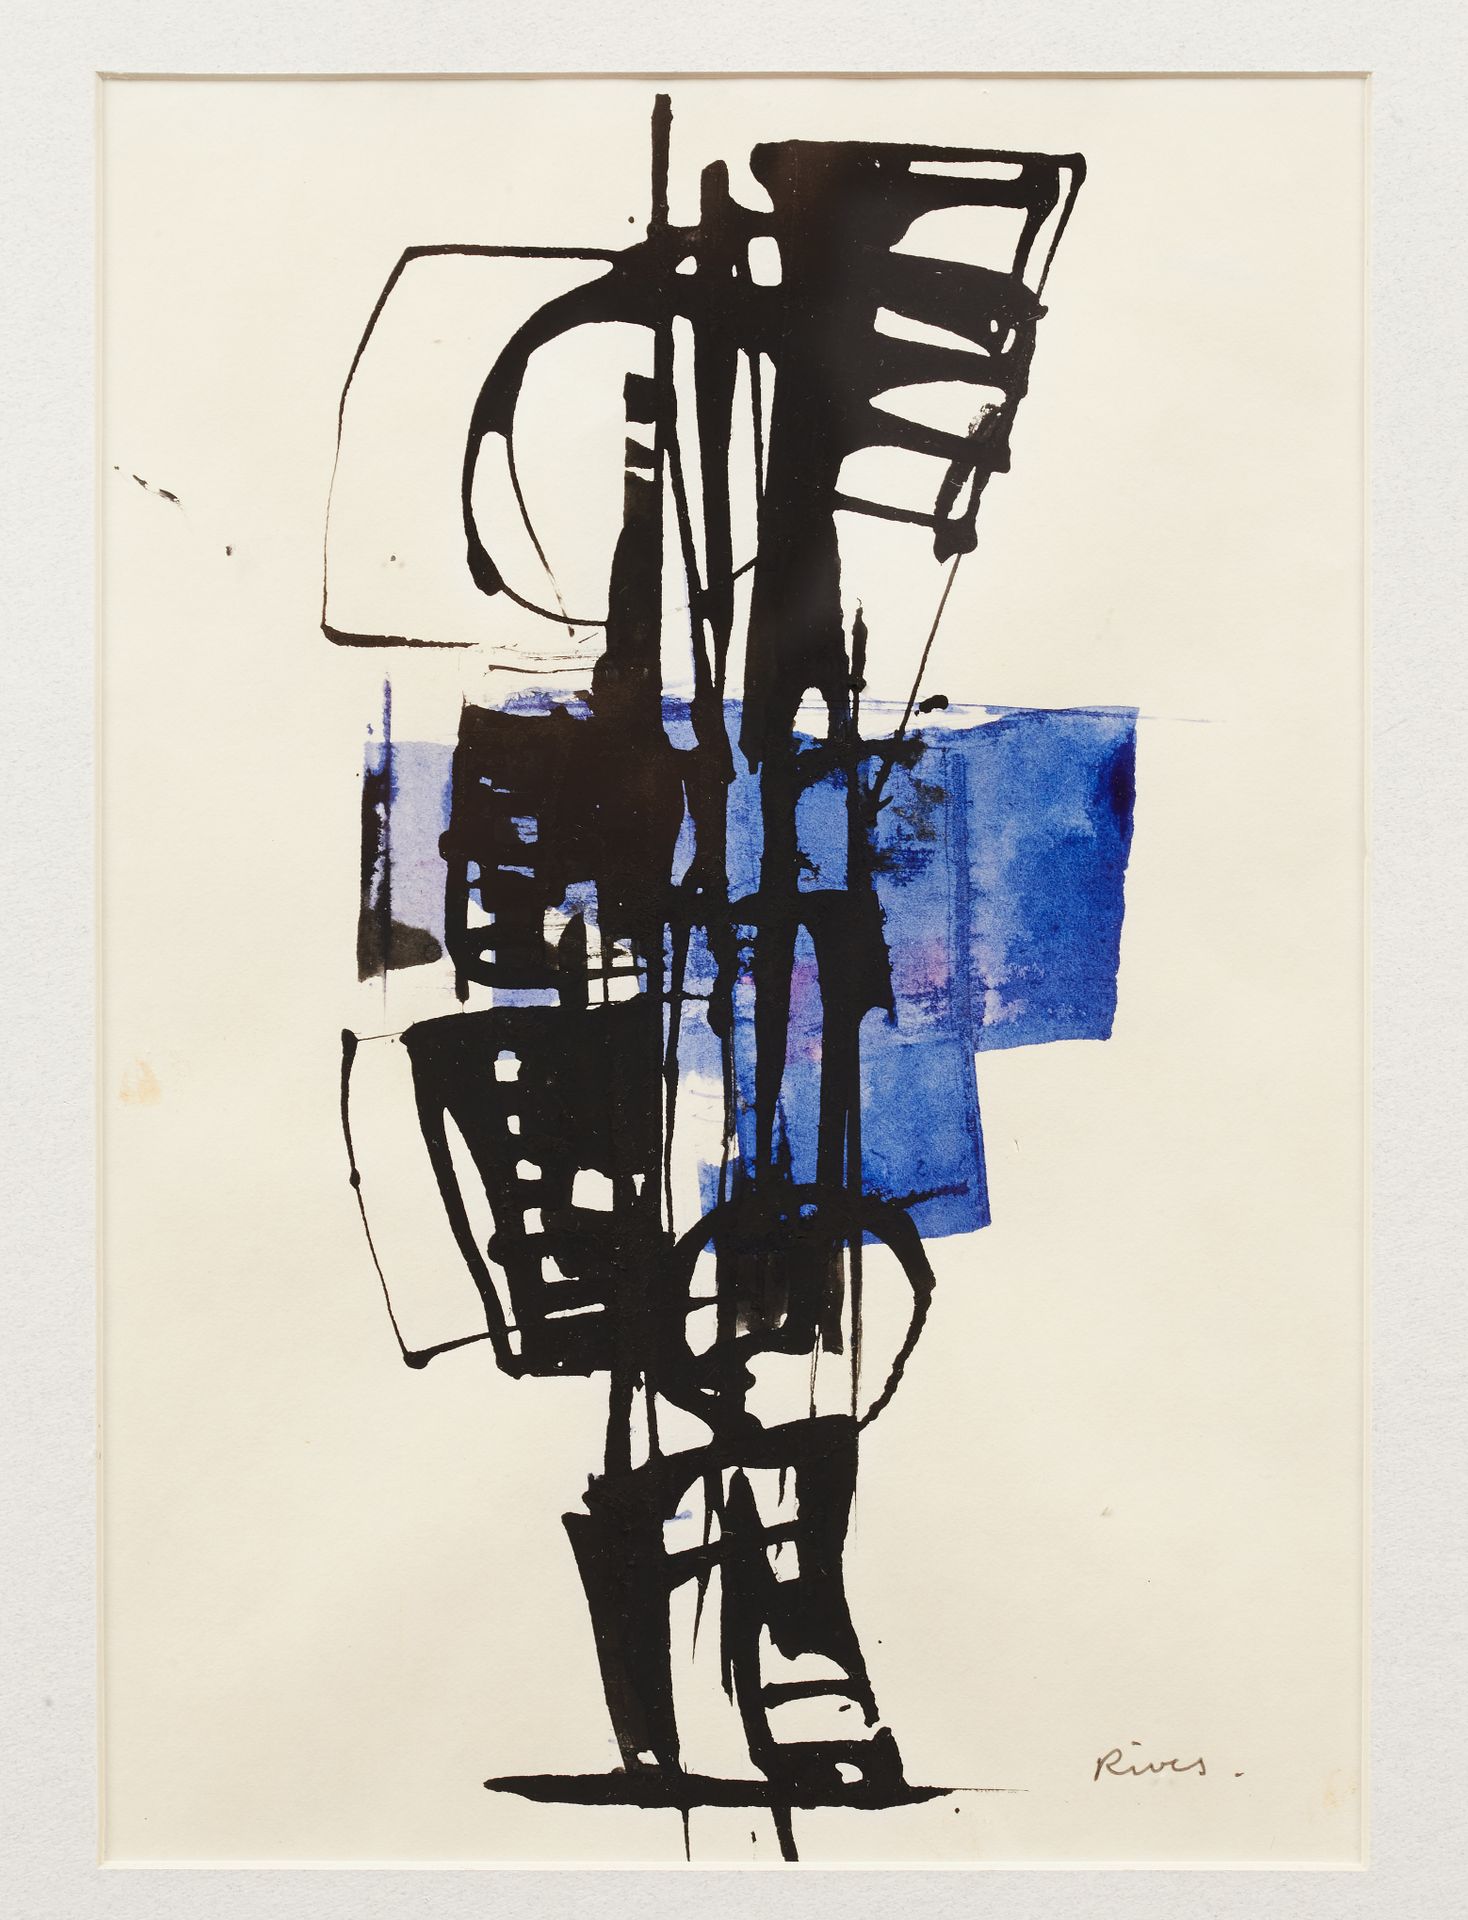 Null 让-皮埃尔-里维斯 (生于1952年)
蓝色和黑色的字符
纸上水墨，右下方有签名
25 x 18 cm (见图) 

雀斑
玻璃下